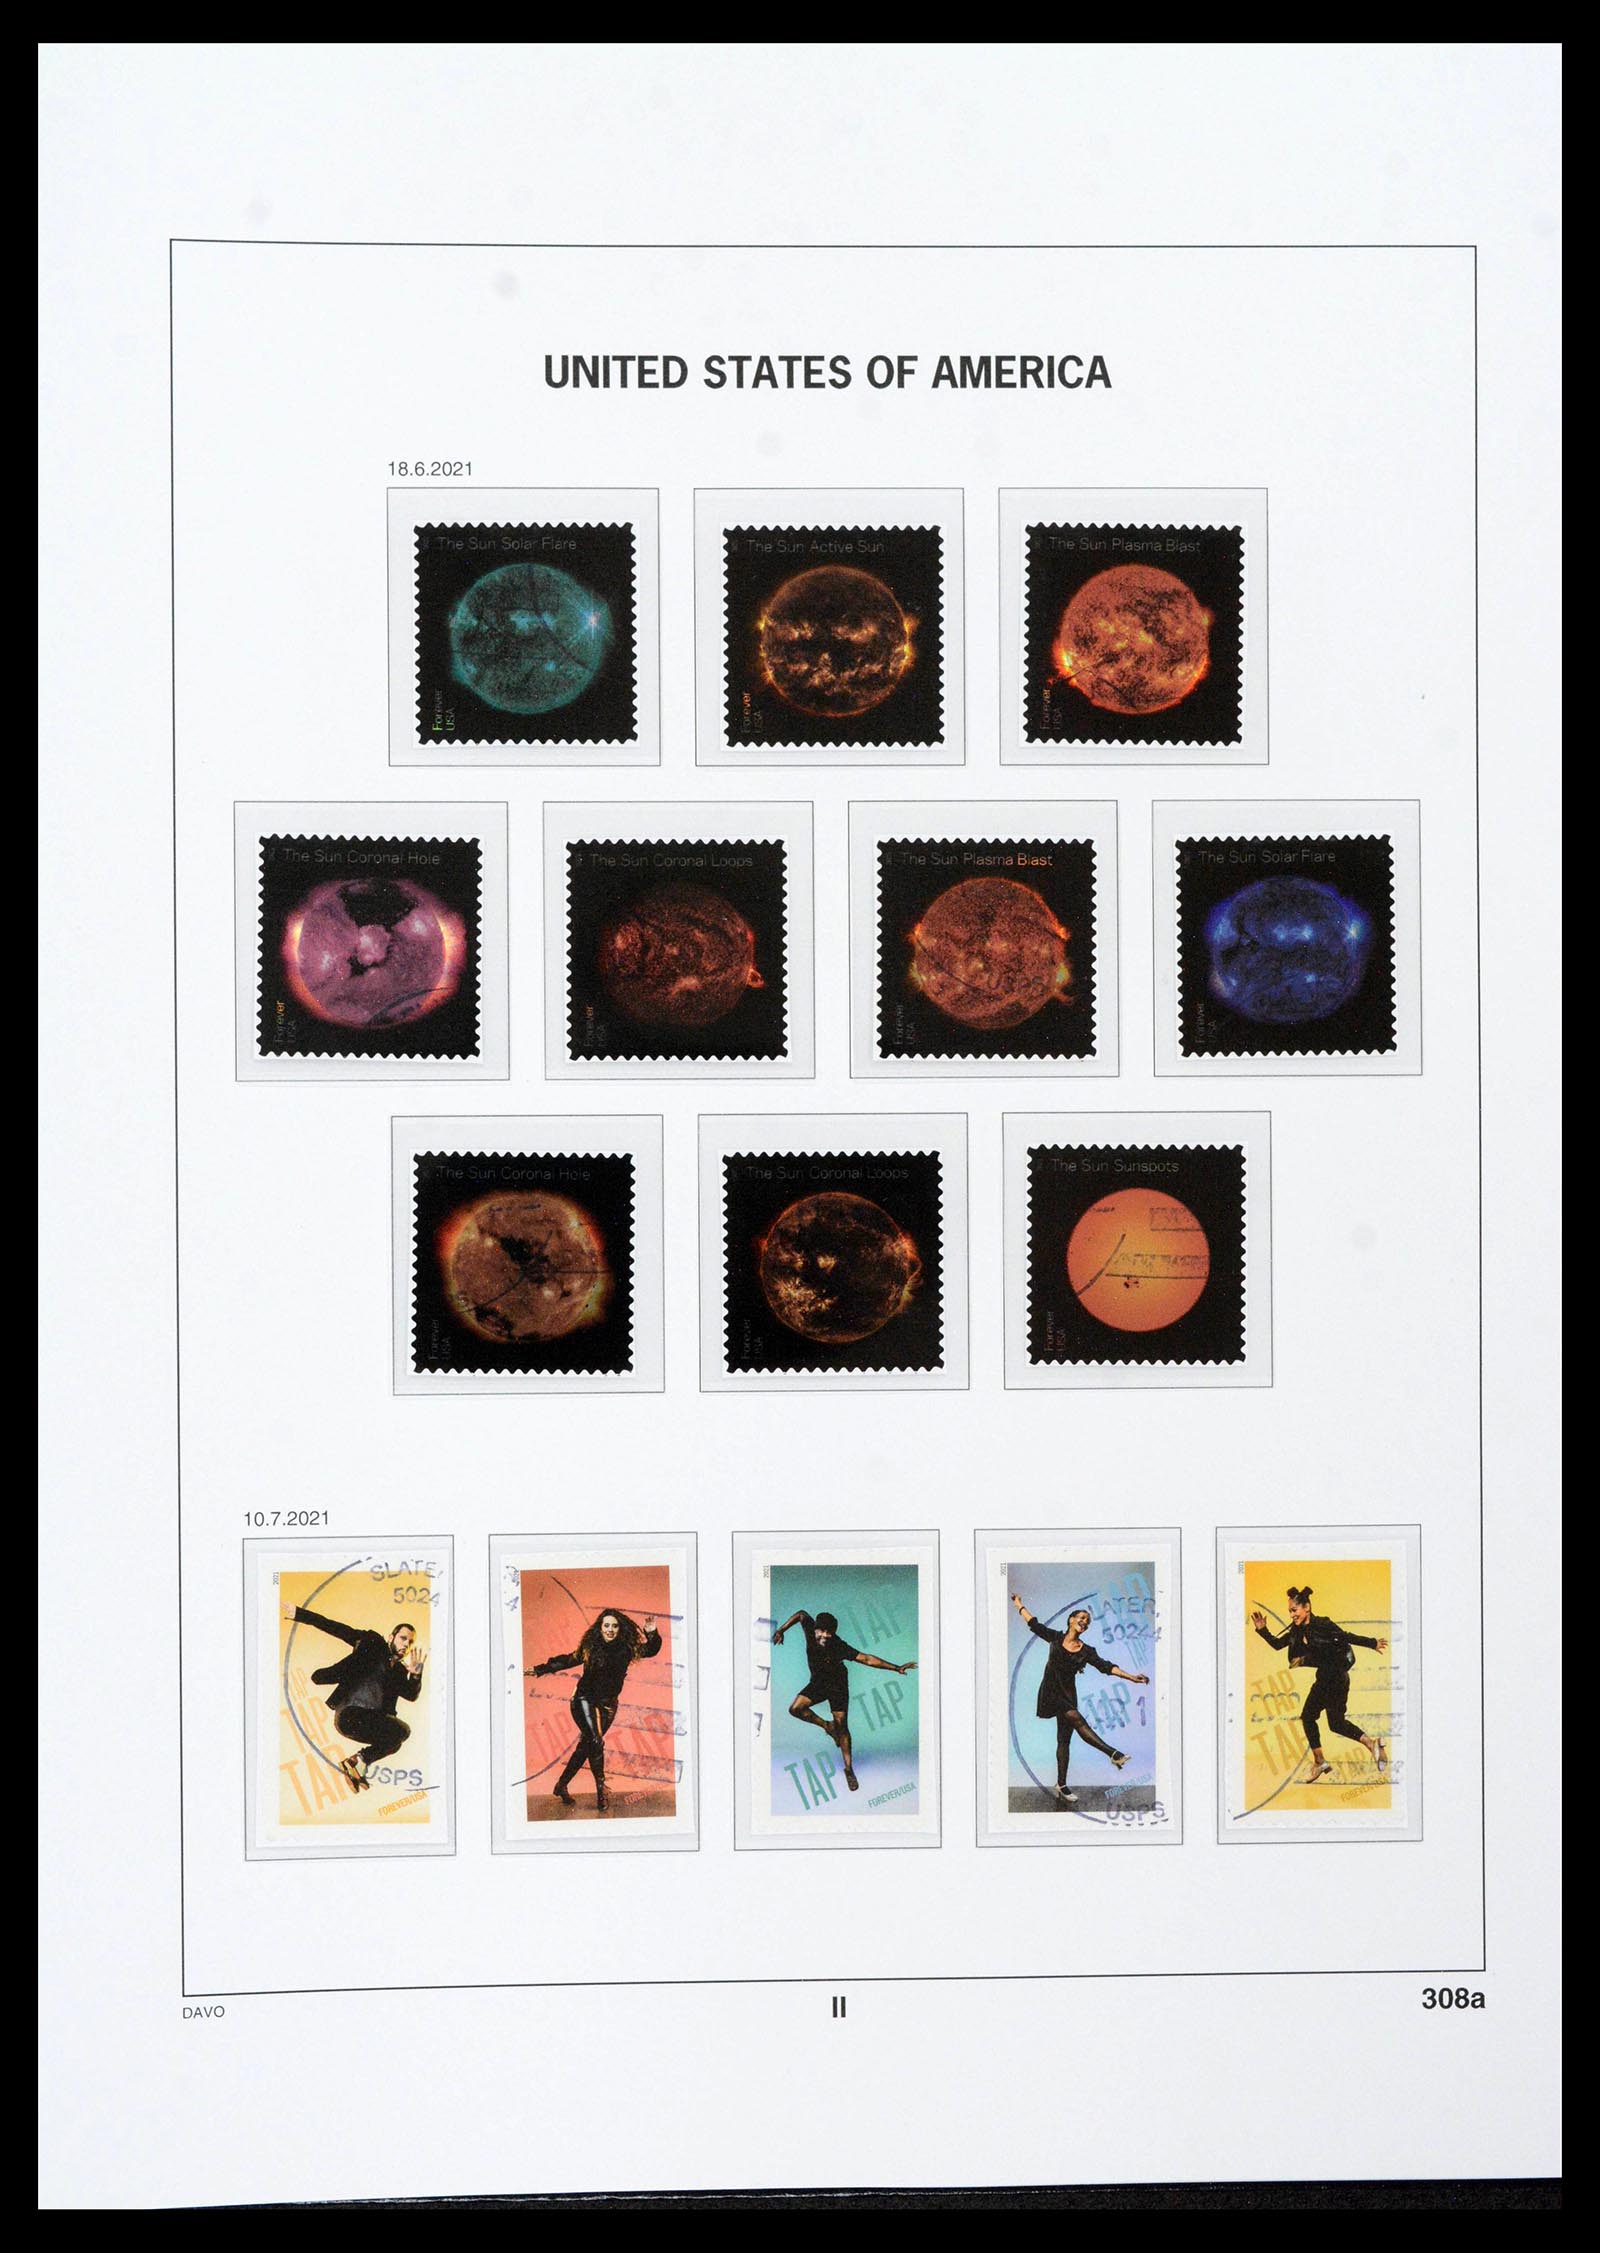 39349 0468 - Stamp collection 39349 USA 1989-2021!